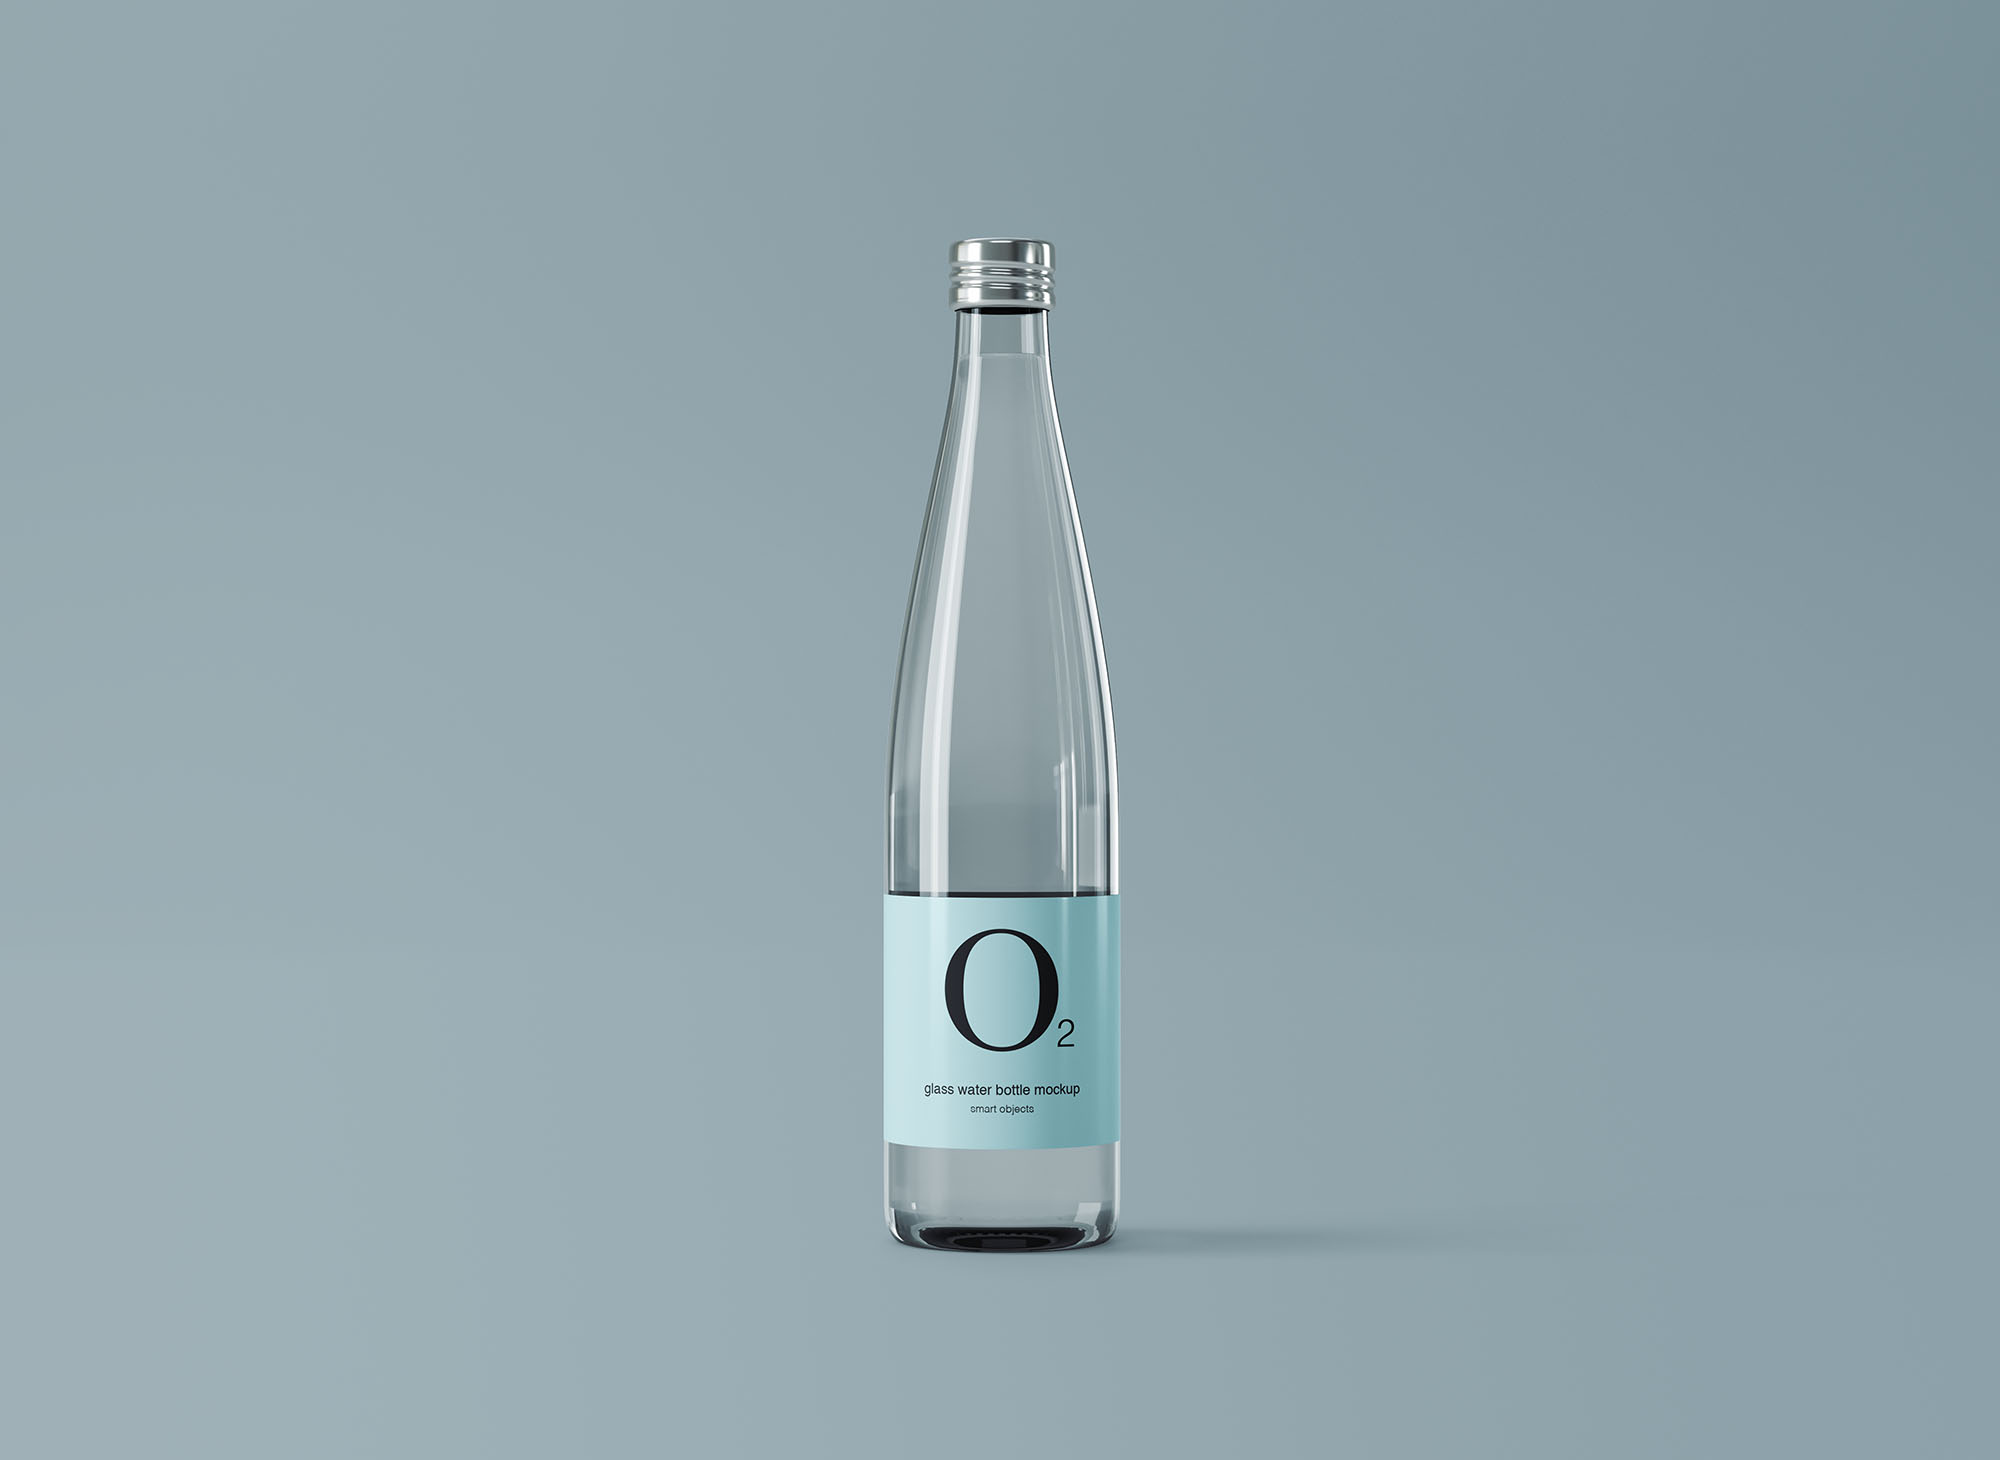 极简设计风格玻璃纯净水矿泉水瓶外观设计图非凡图库精选 Minimal Glass Water Bottle Mockup插图